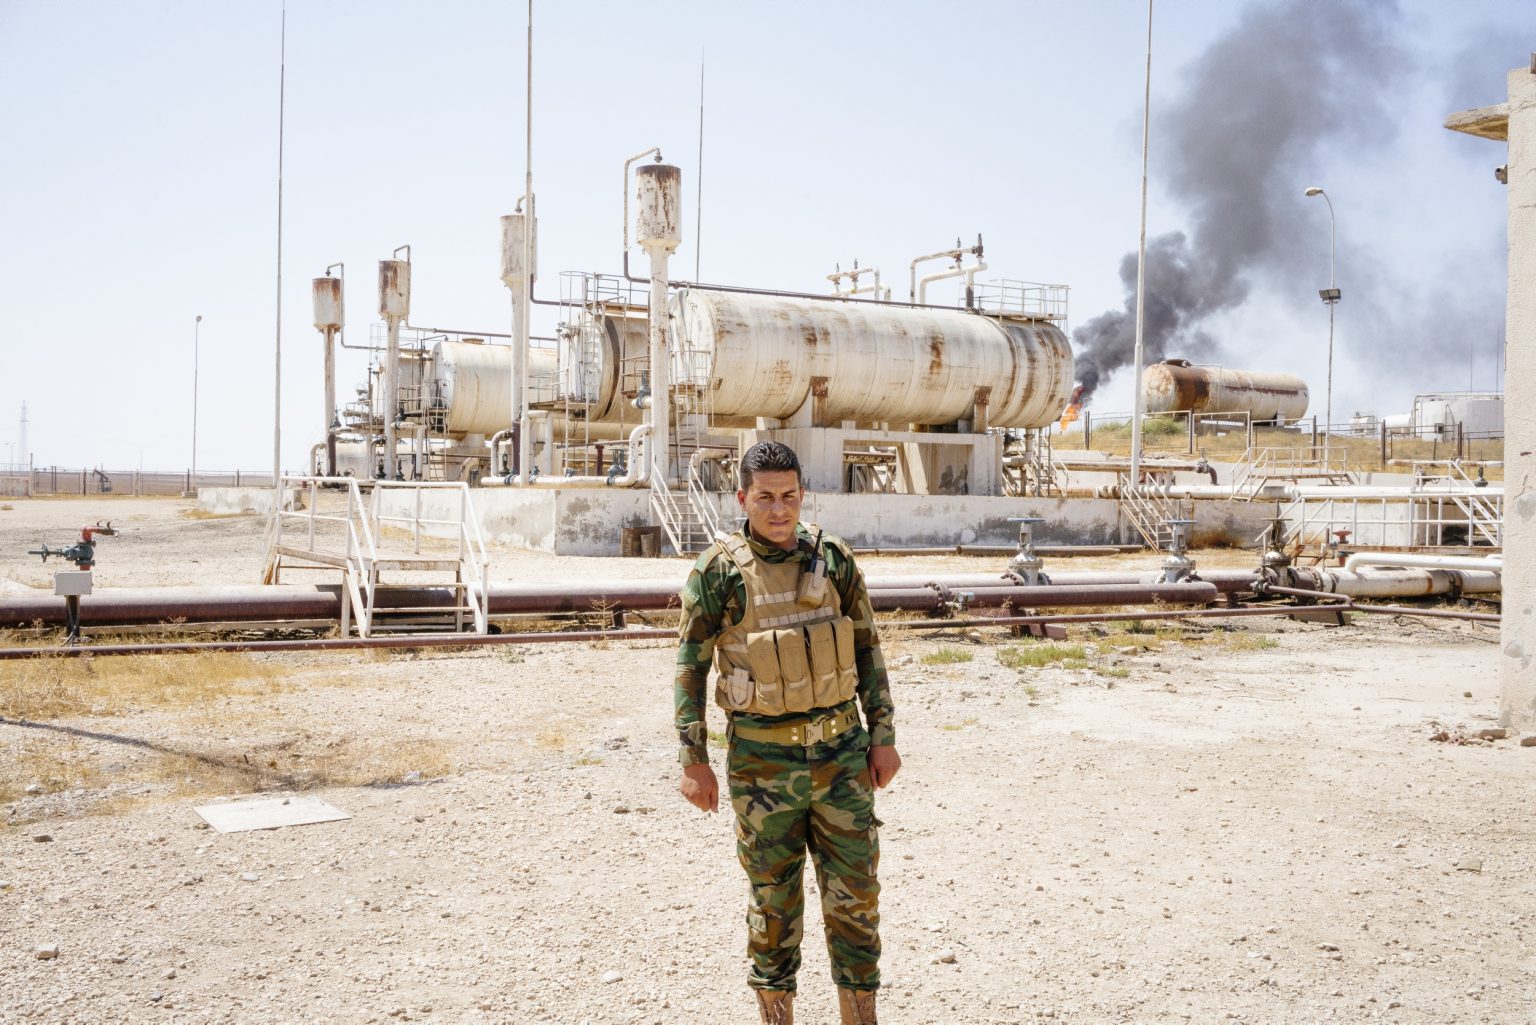 SYRIA. August 25, 2021 - A Kurdish-led Syrian Democratic Forces (SDF) member, stands inside an oil refinery plant in northeastern Syria.

SIRIA. 25 agosto 2021 - Un membro delle Forze Democratiche Siriane (SDF) staziona all'interno della raffineria Suwadiya 4, nel nord-est della Siria.